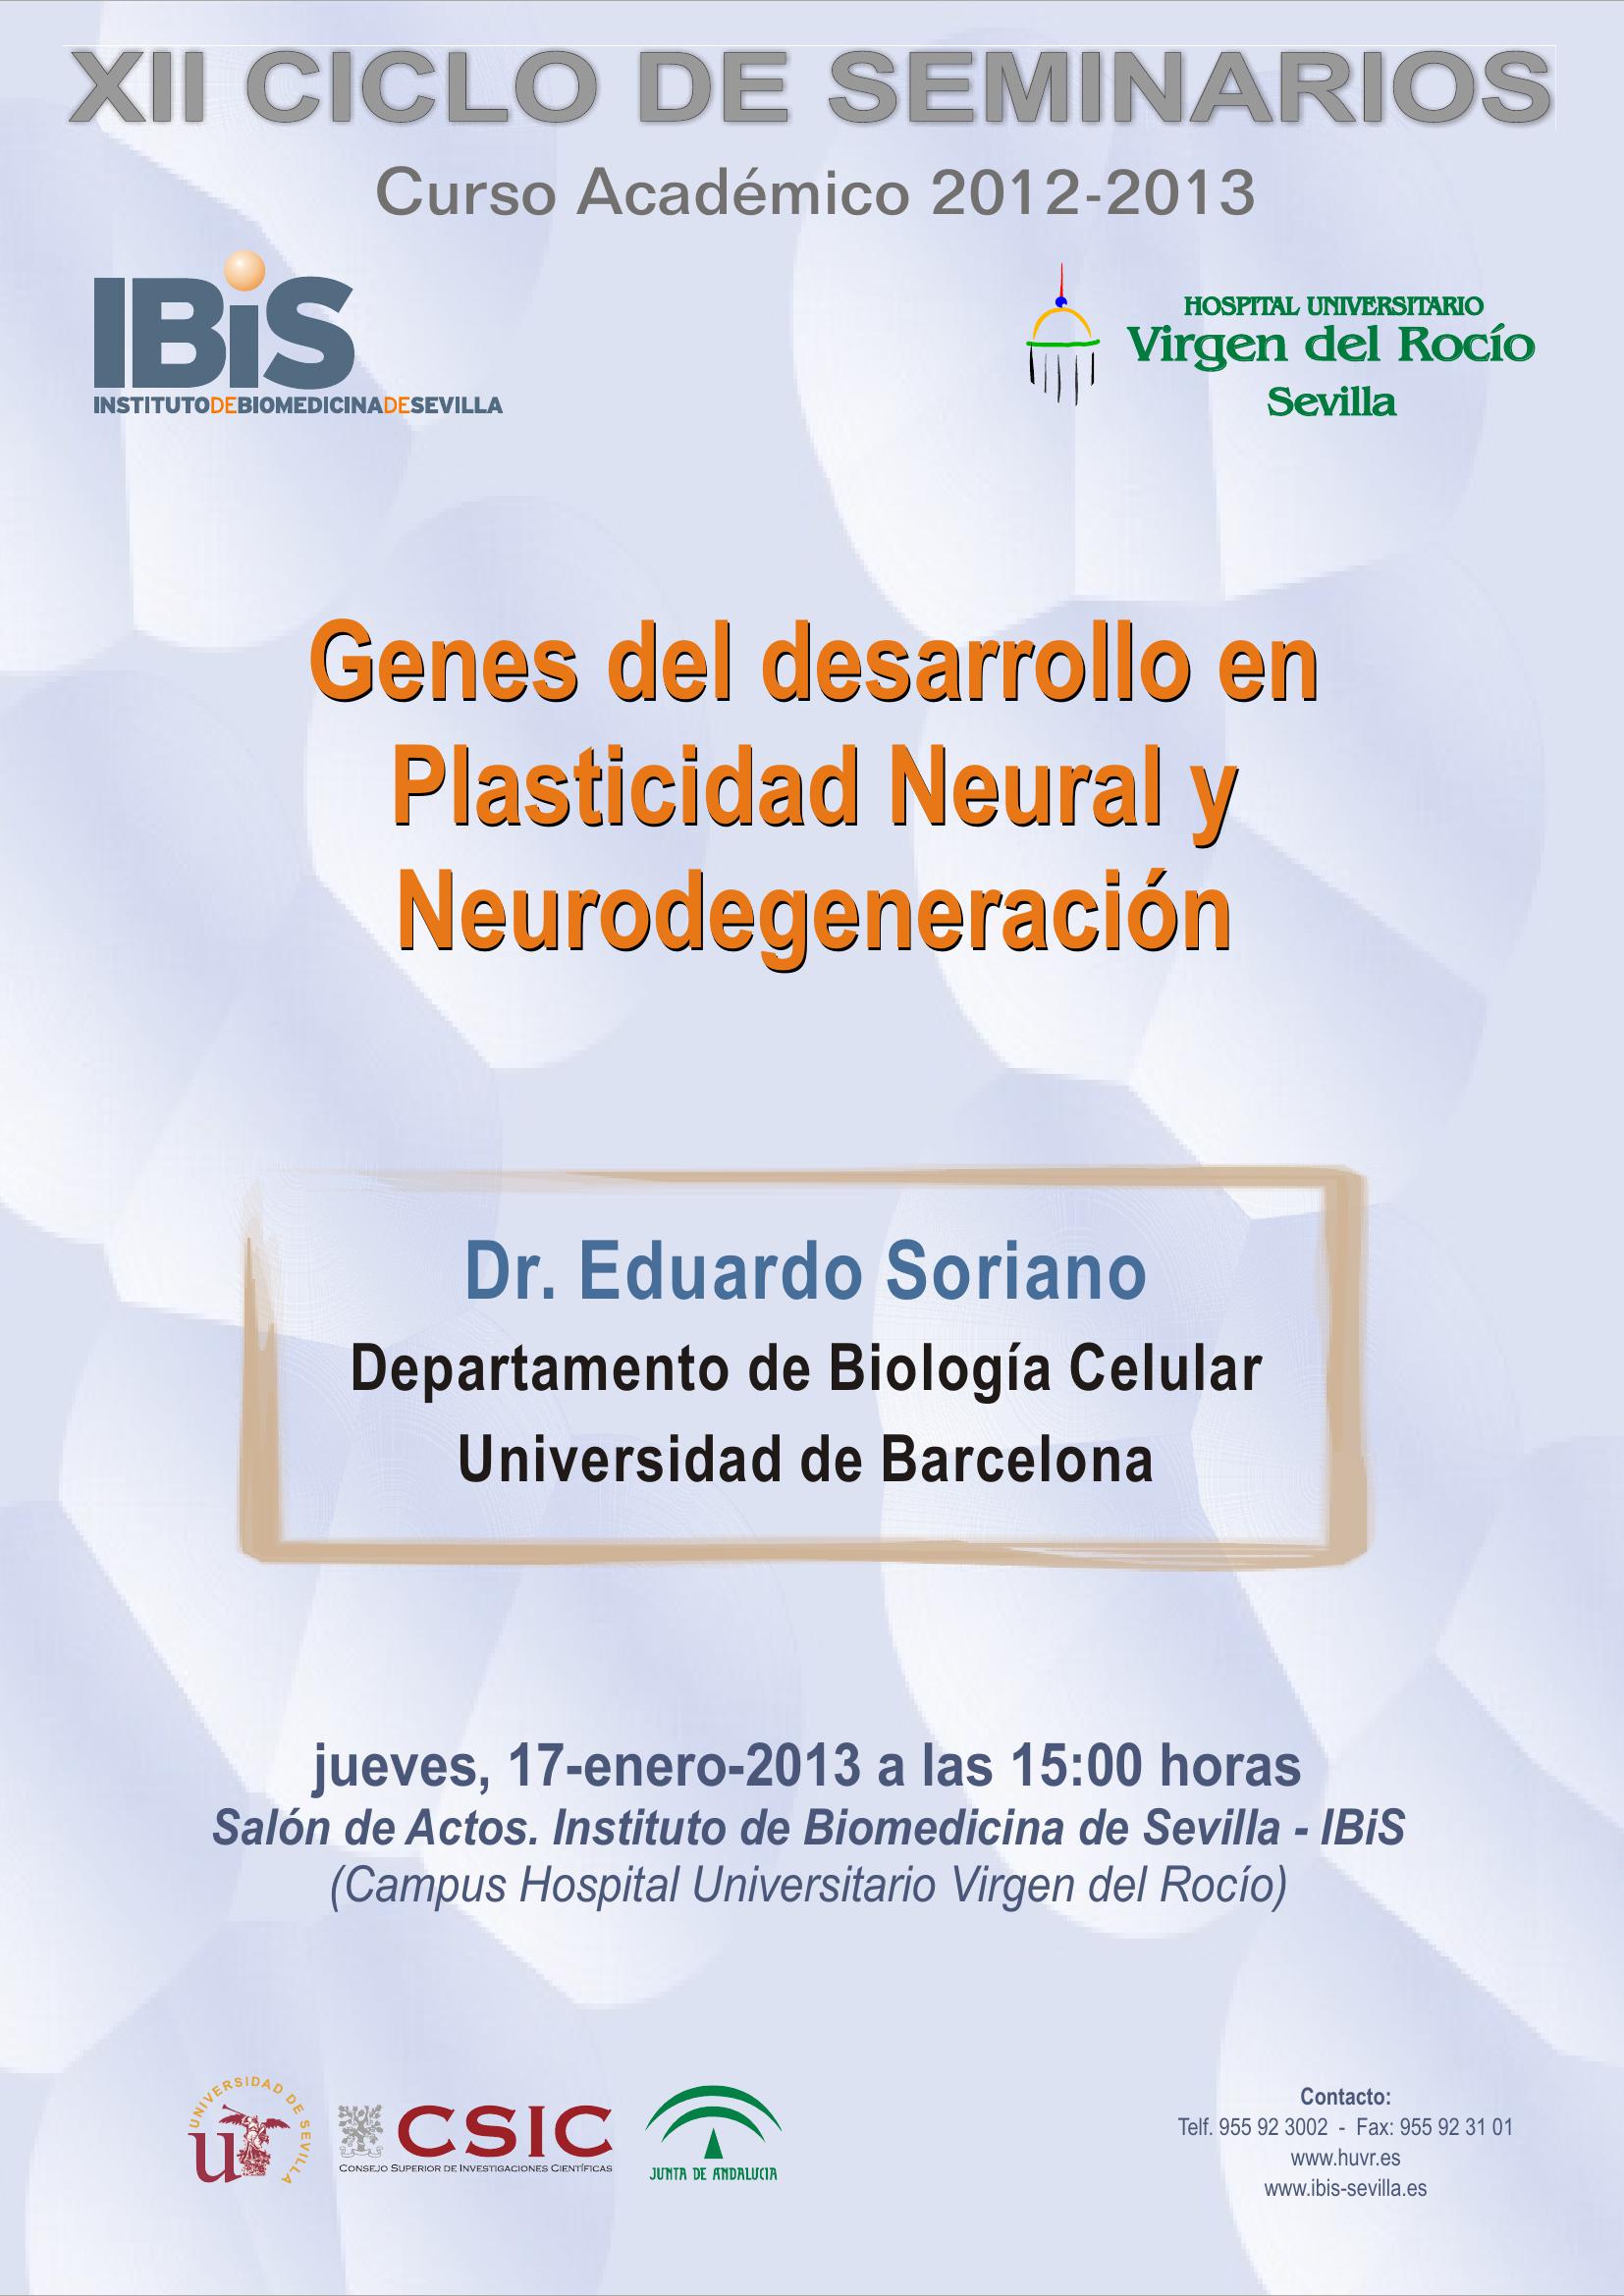 Poster: Genes del desarrollo en Plasticidad Neural y Neurodegeneración.